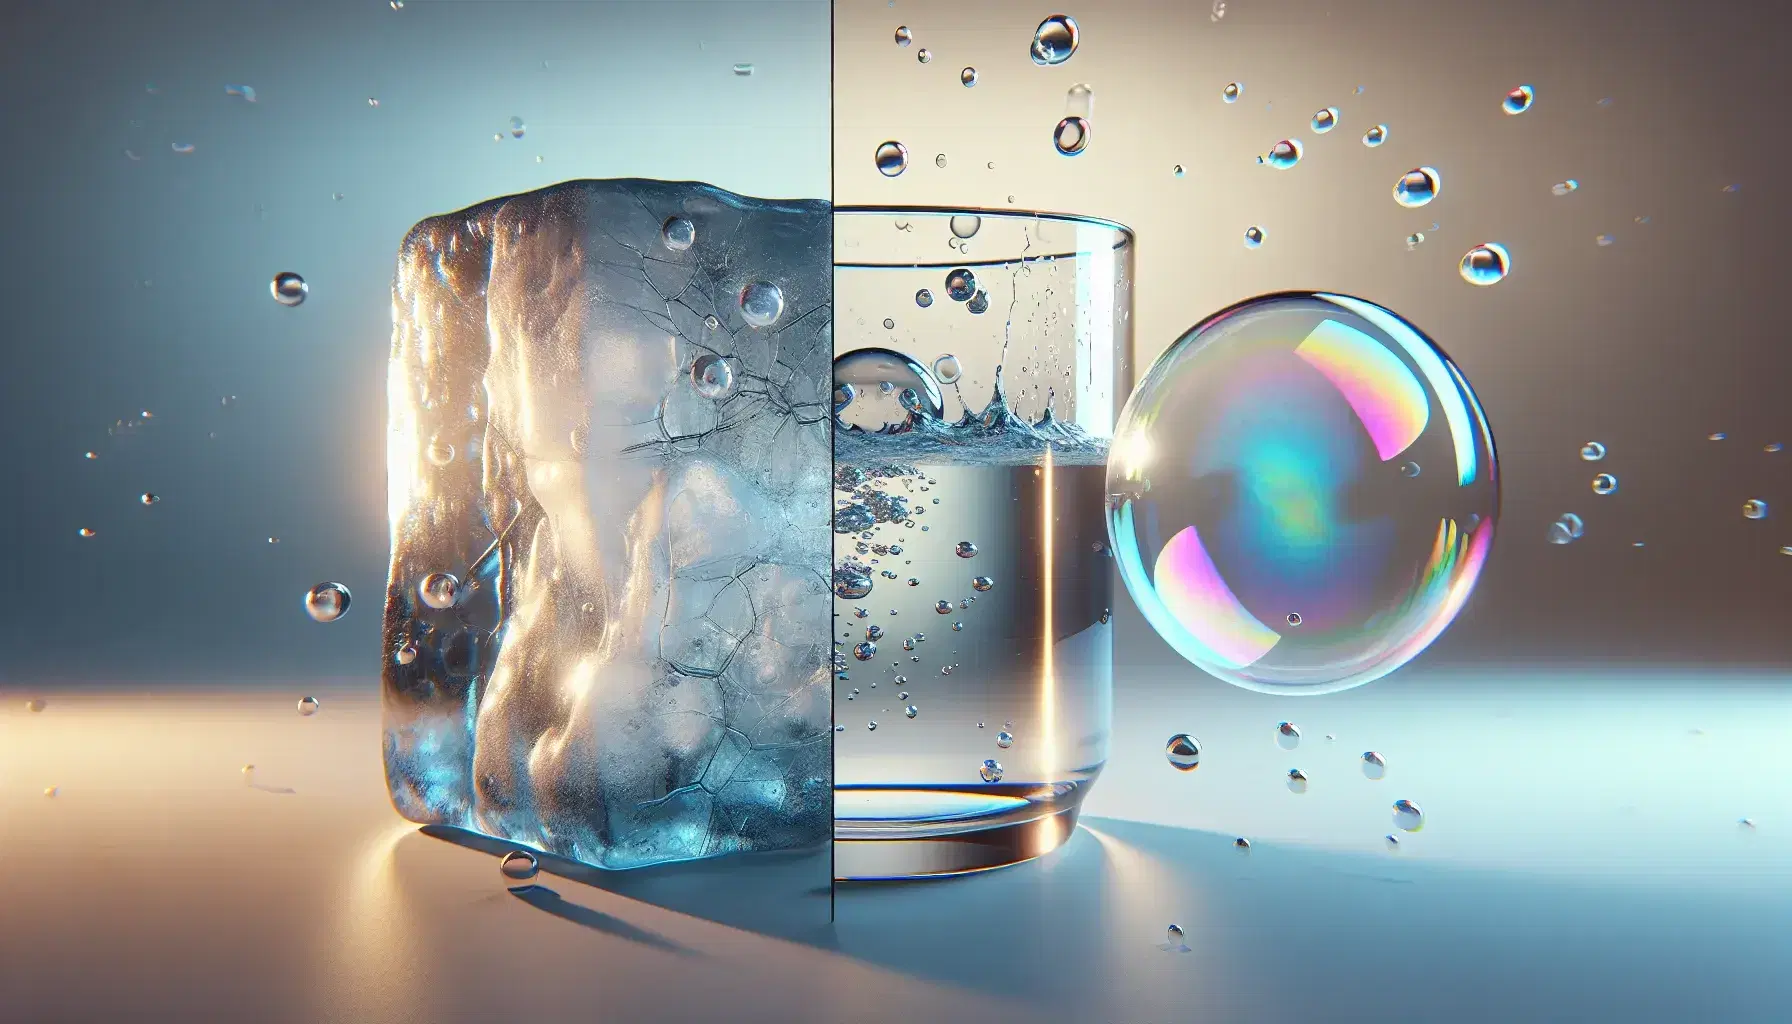 Stati della materia rappresentati da un cubo di ghiaccio, un bicchiere d'acqua con condensa e una bolla di sapone colorata.